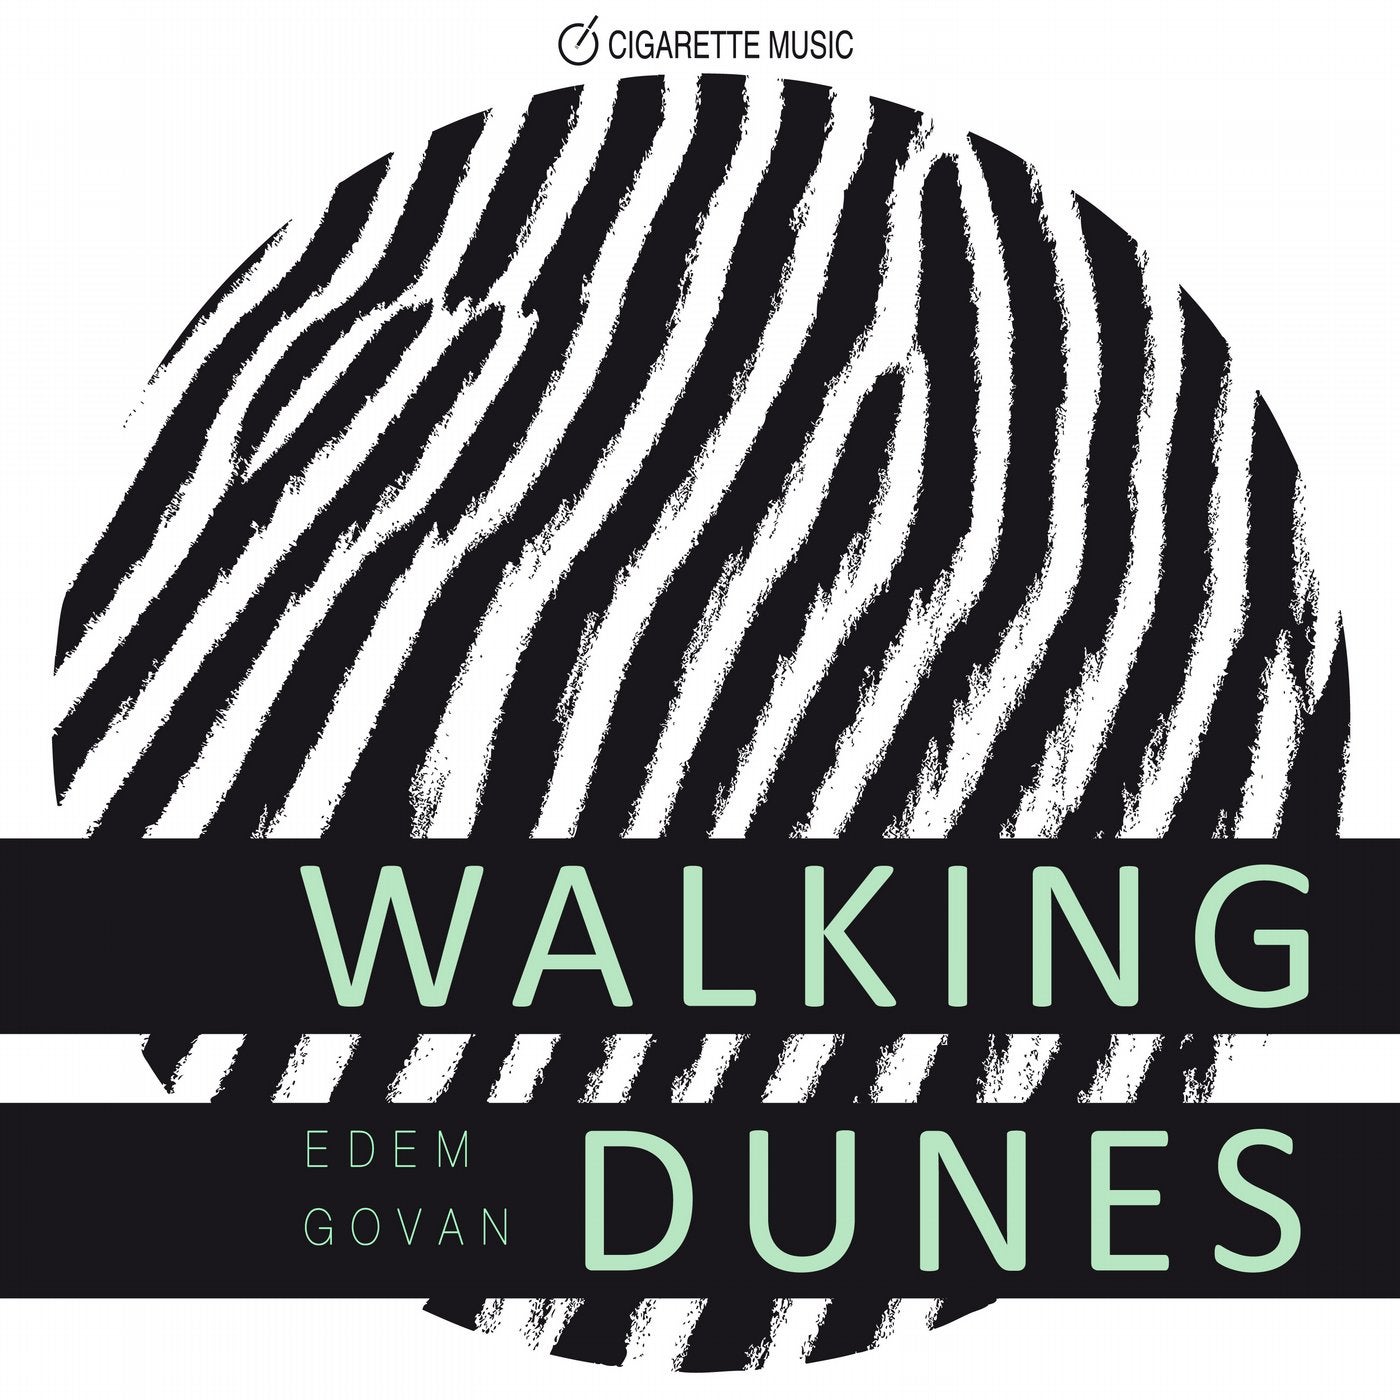 Walking Dunes